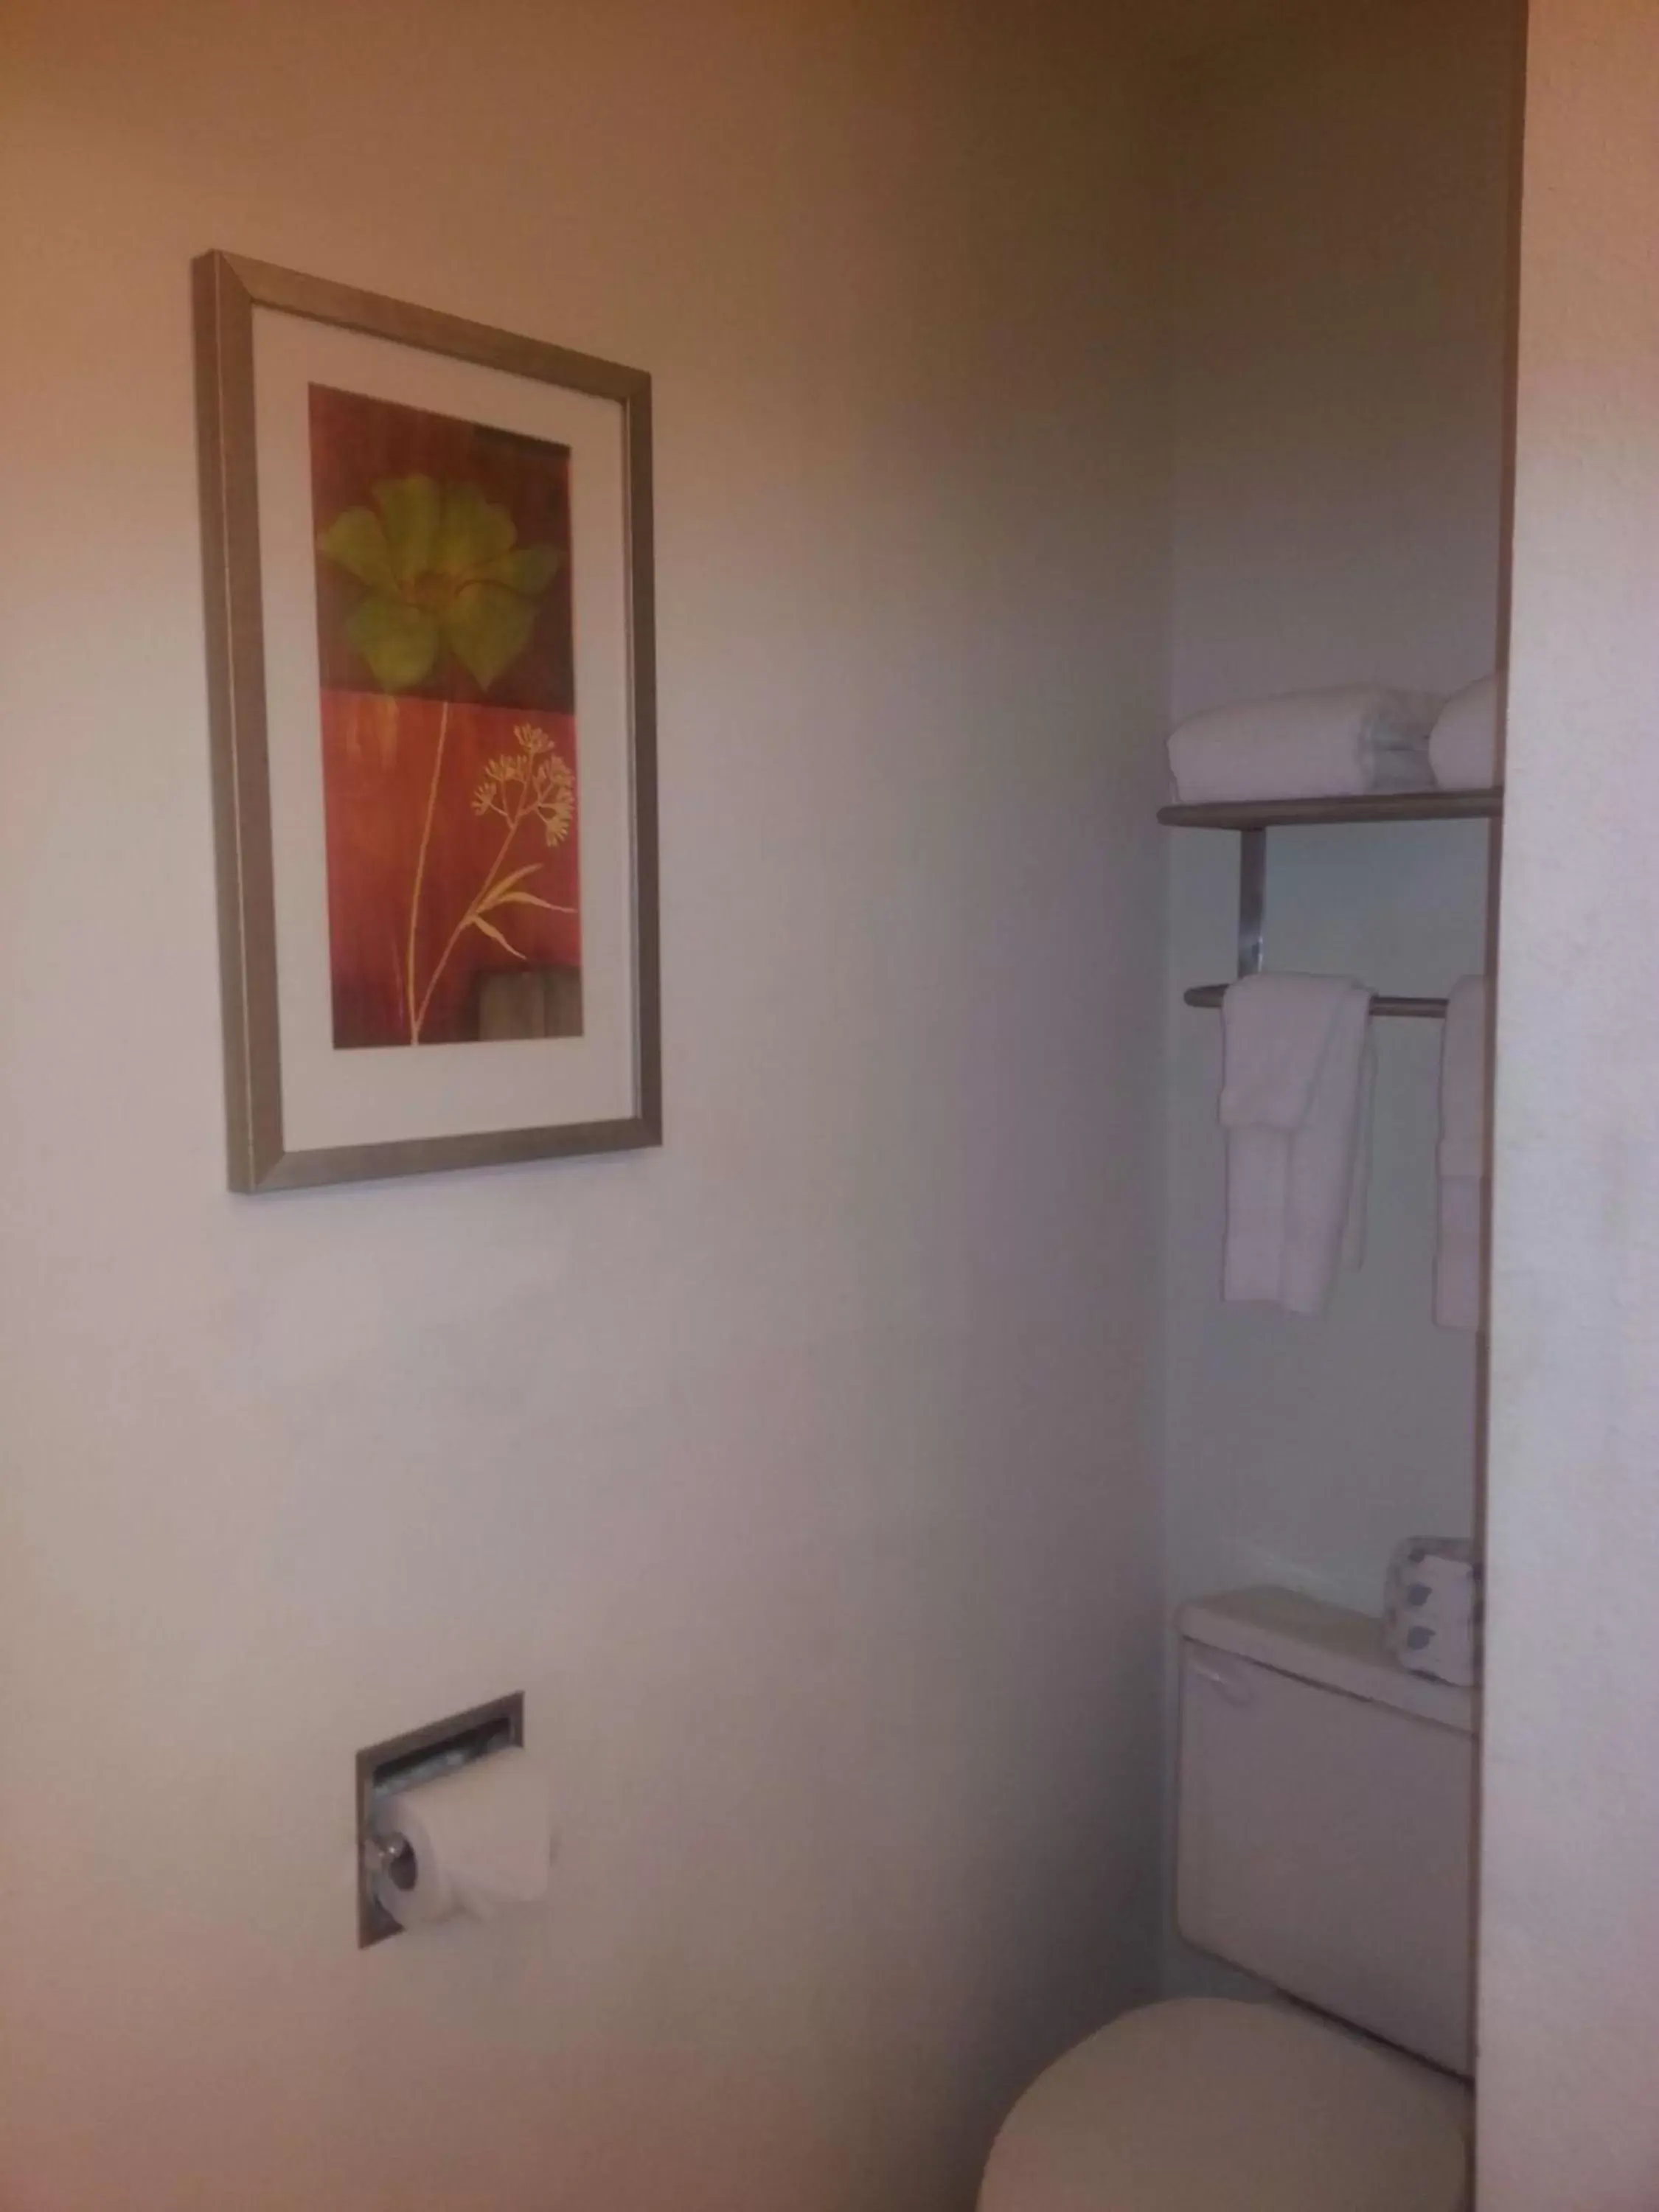 Bathroom in Harlan Inn and Suites